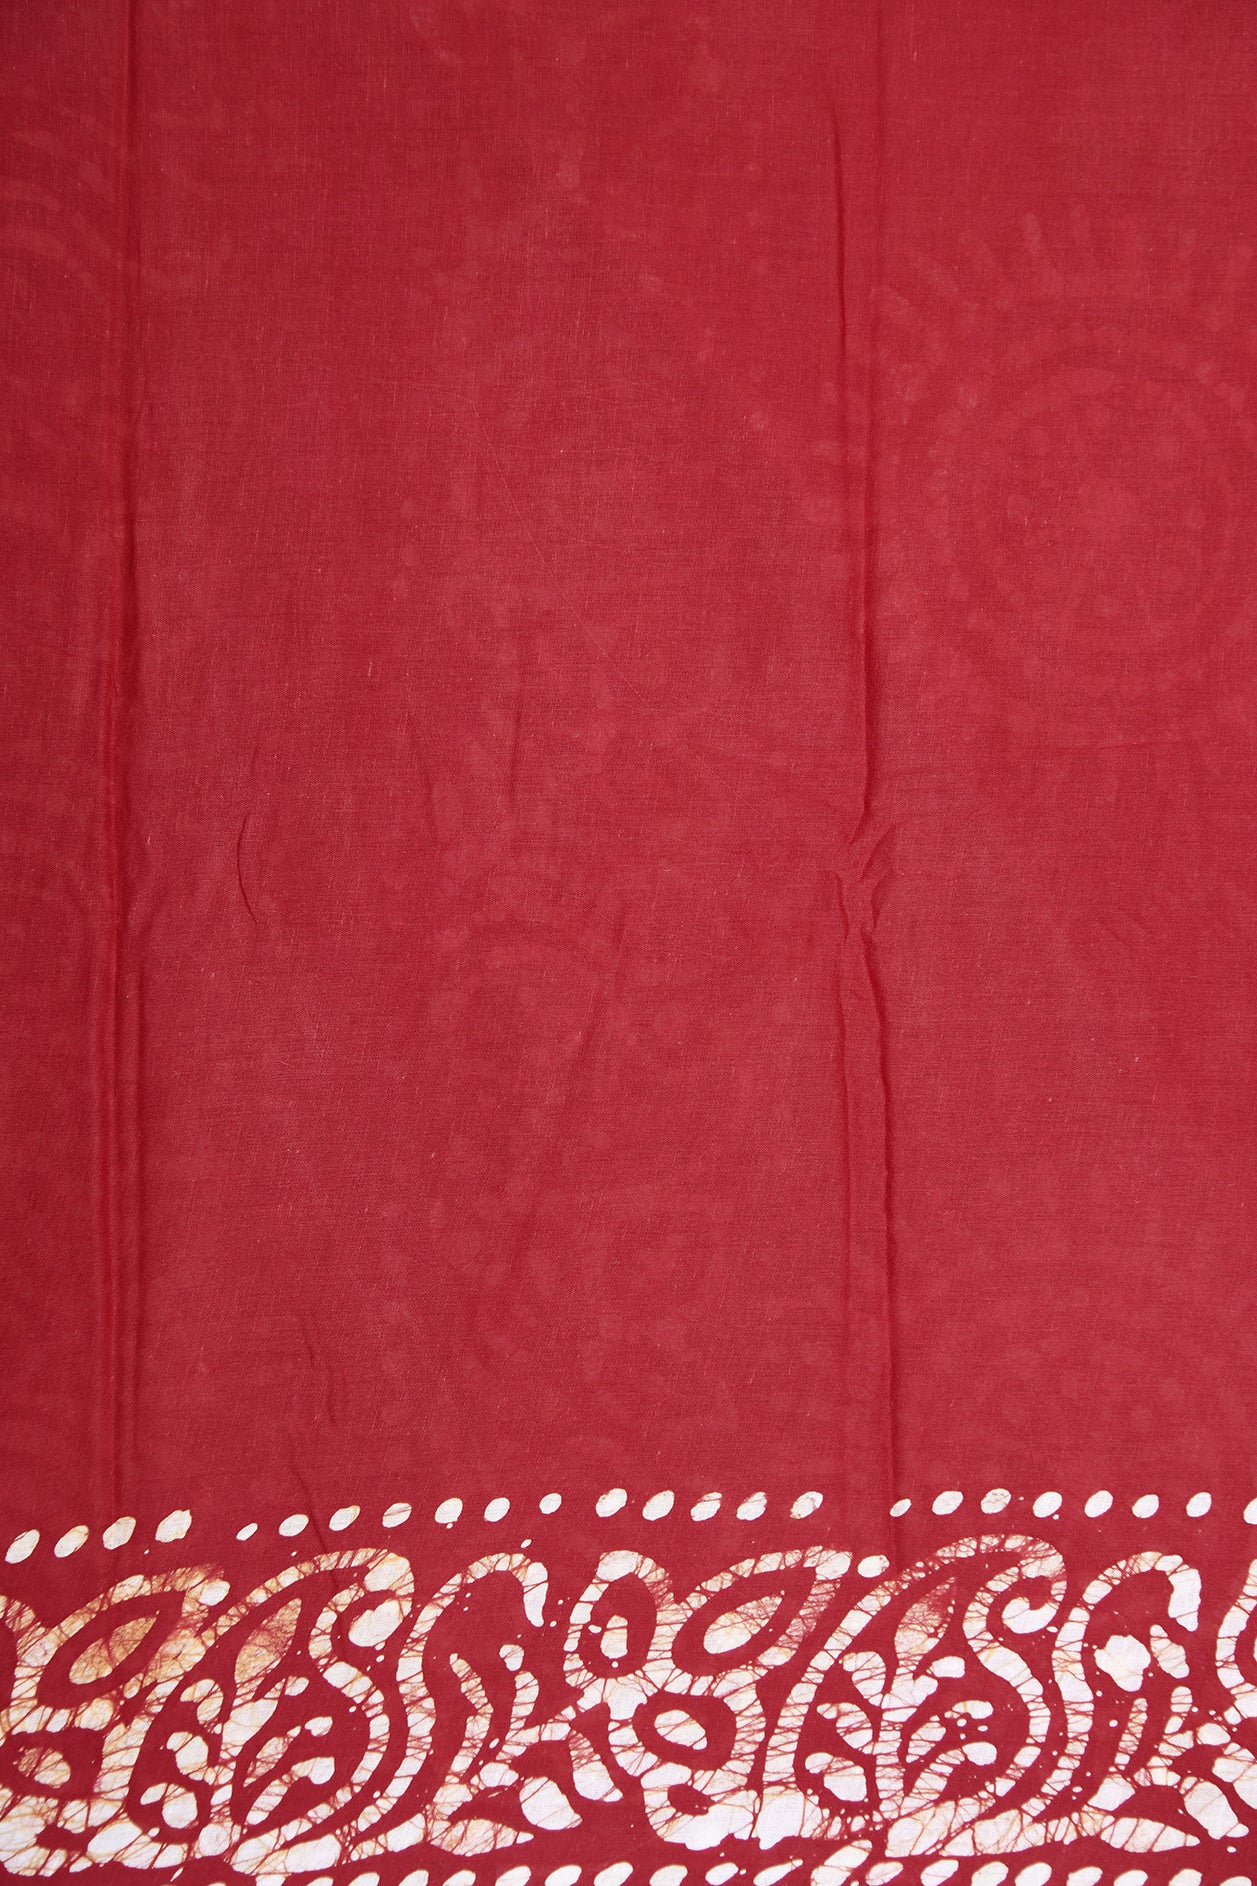 Floral Border Red And Cream Batik Printed Saree